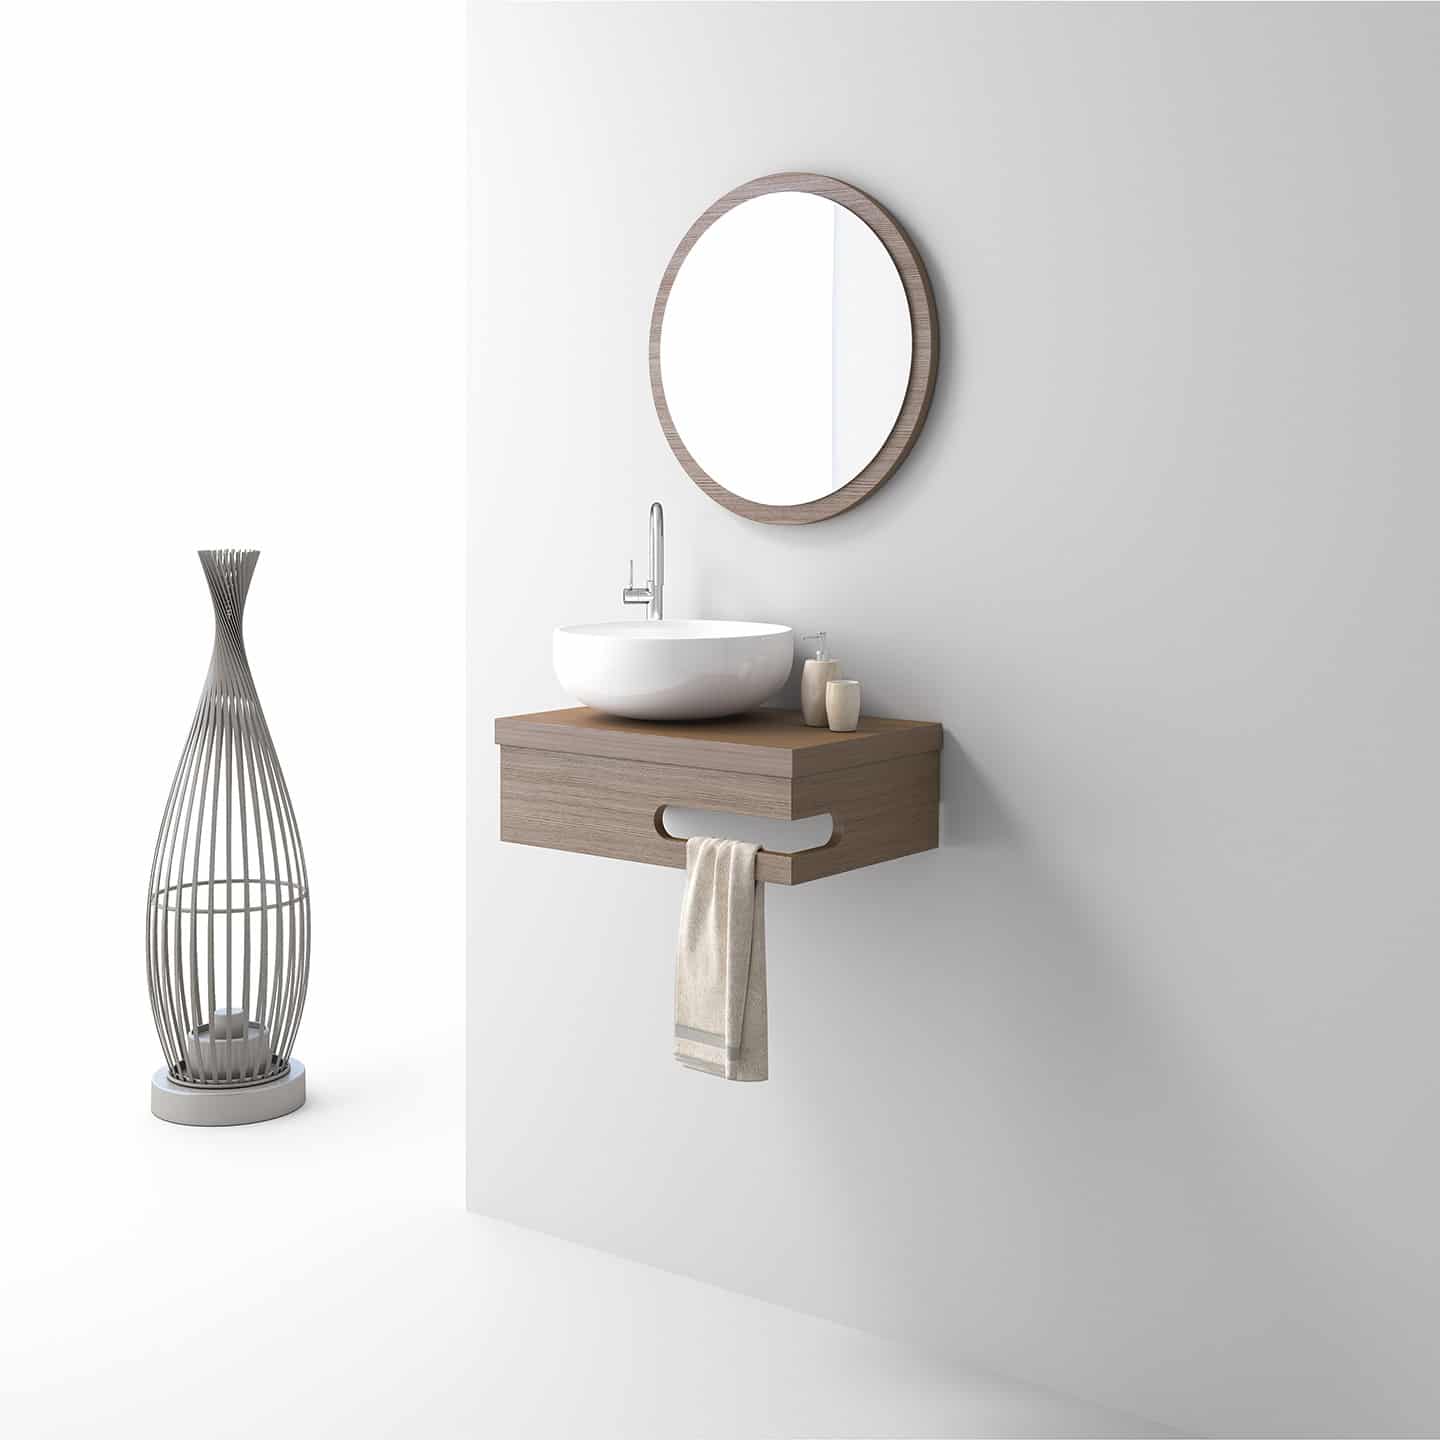 MINI 045 – Zebis – Bath furniture